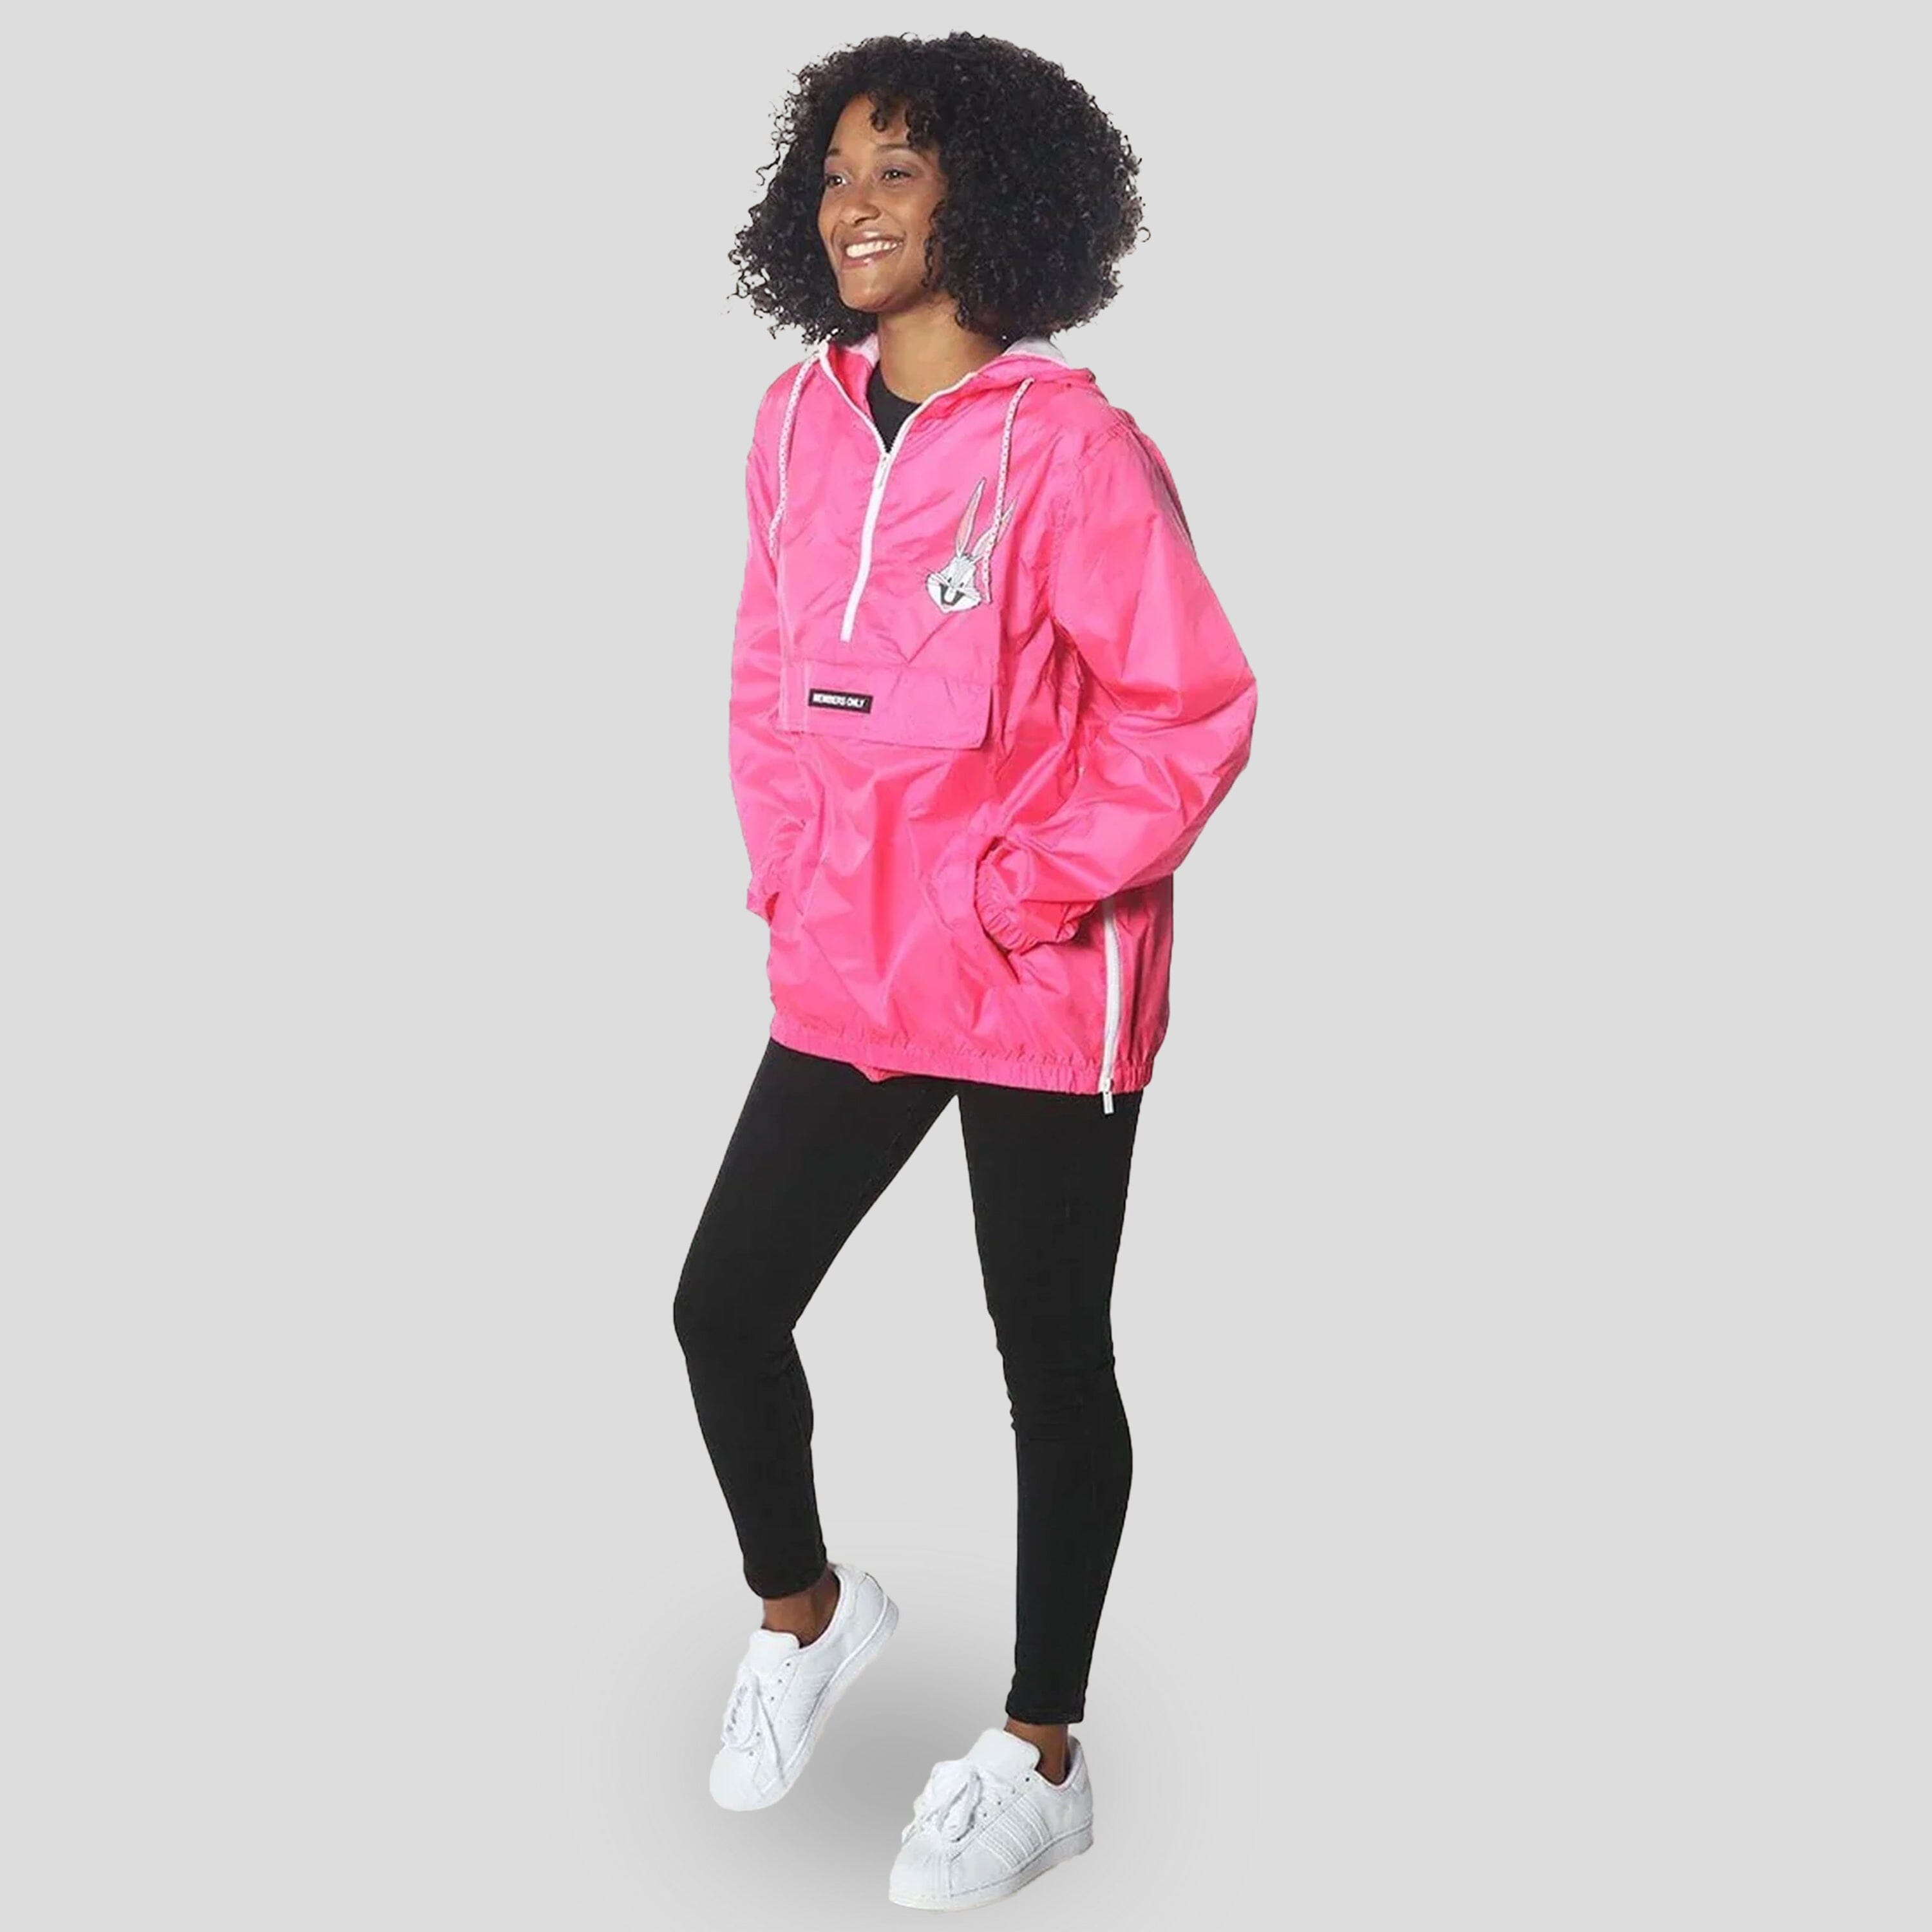 SOLD  NWT PINK Windbreaker Jacket M/L  Pink windbreaker jacket, Jackets,  Windbreaker jacket